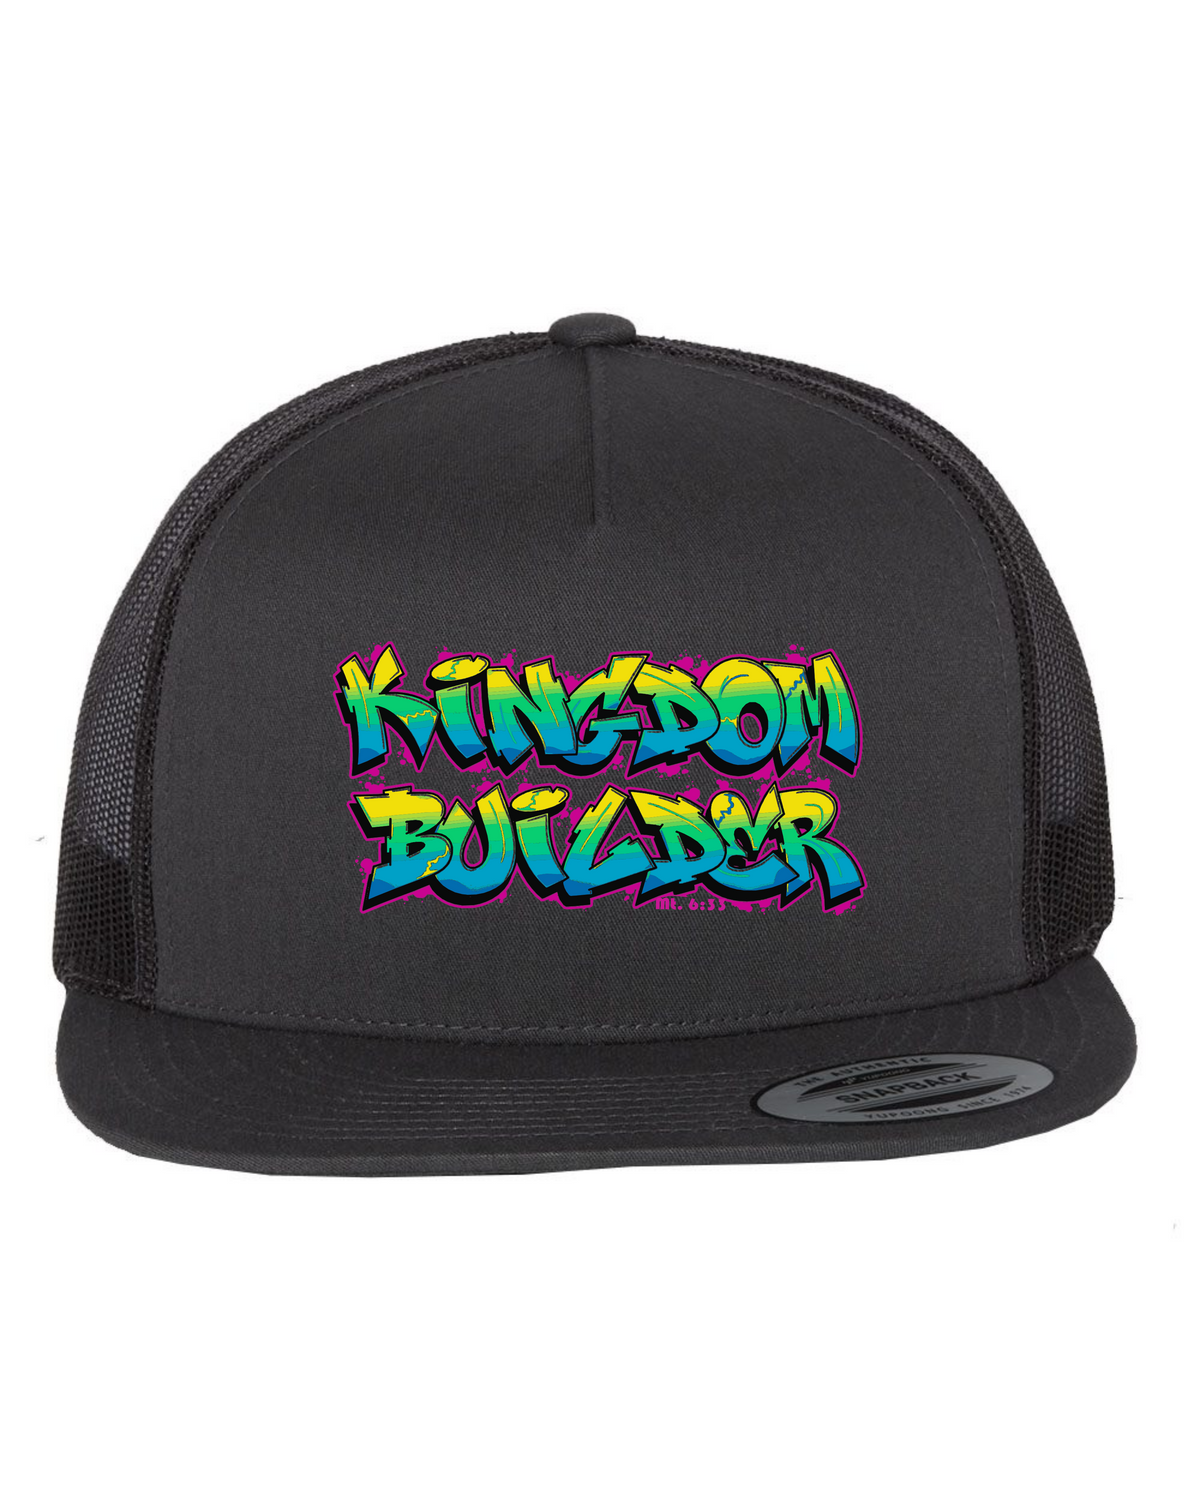 Kingdom Builder - Black Flat Bill Hat